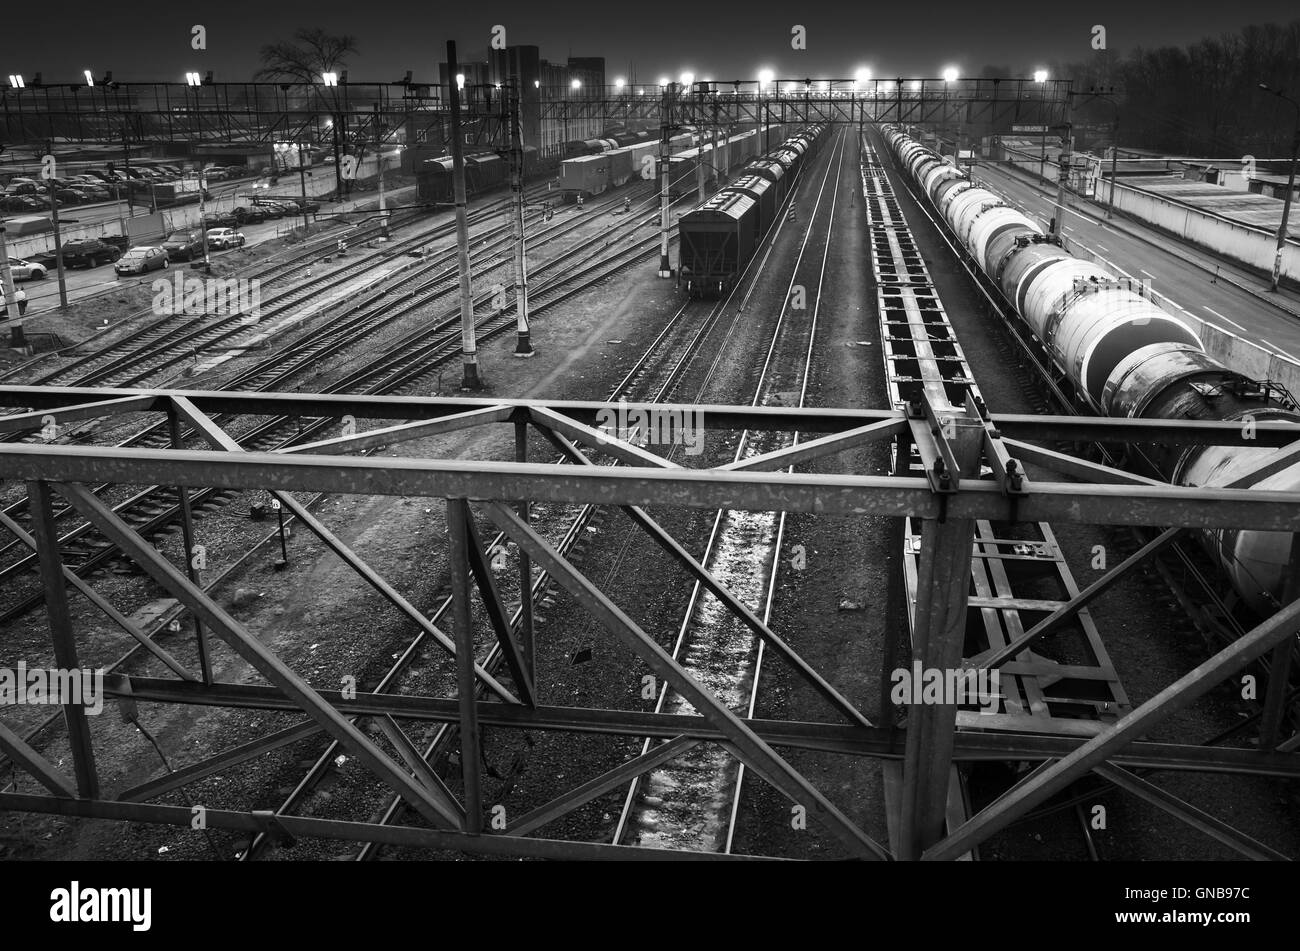 Bahnhof mit Beleuchtung in der Nacht, schwarz / weiß Foto sortieren Stockfoto